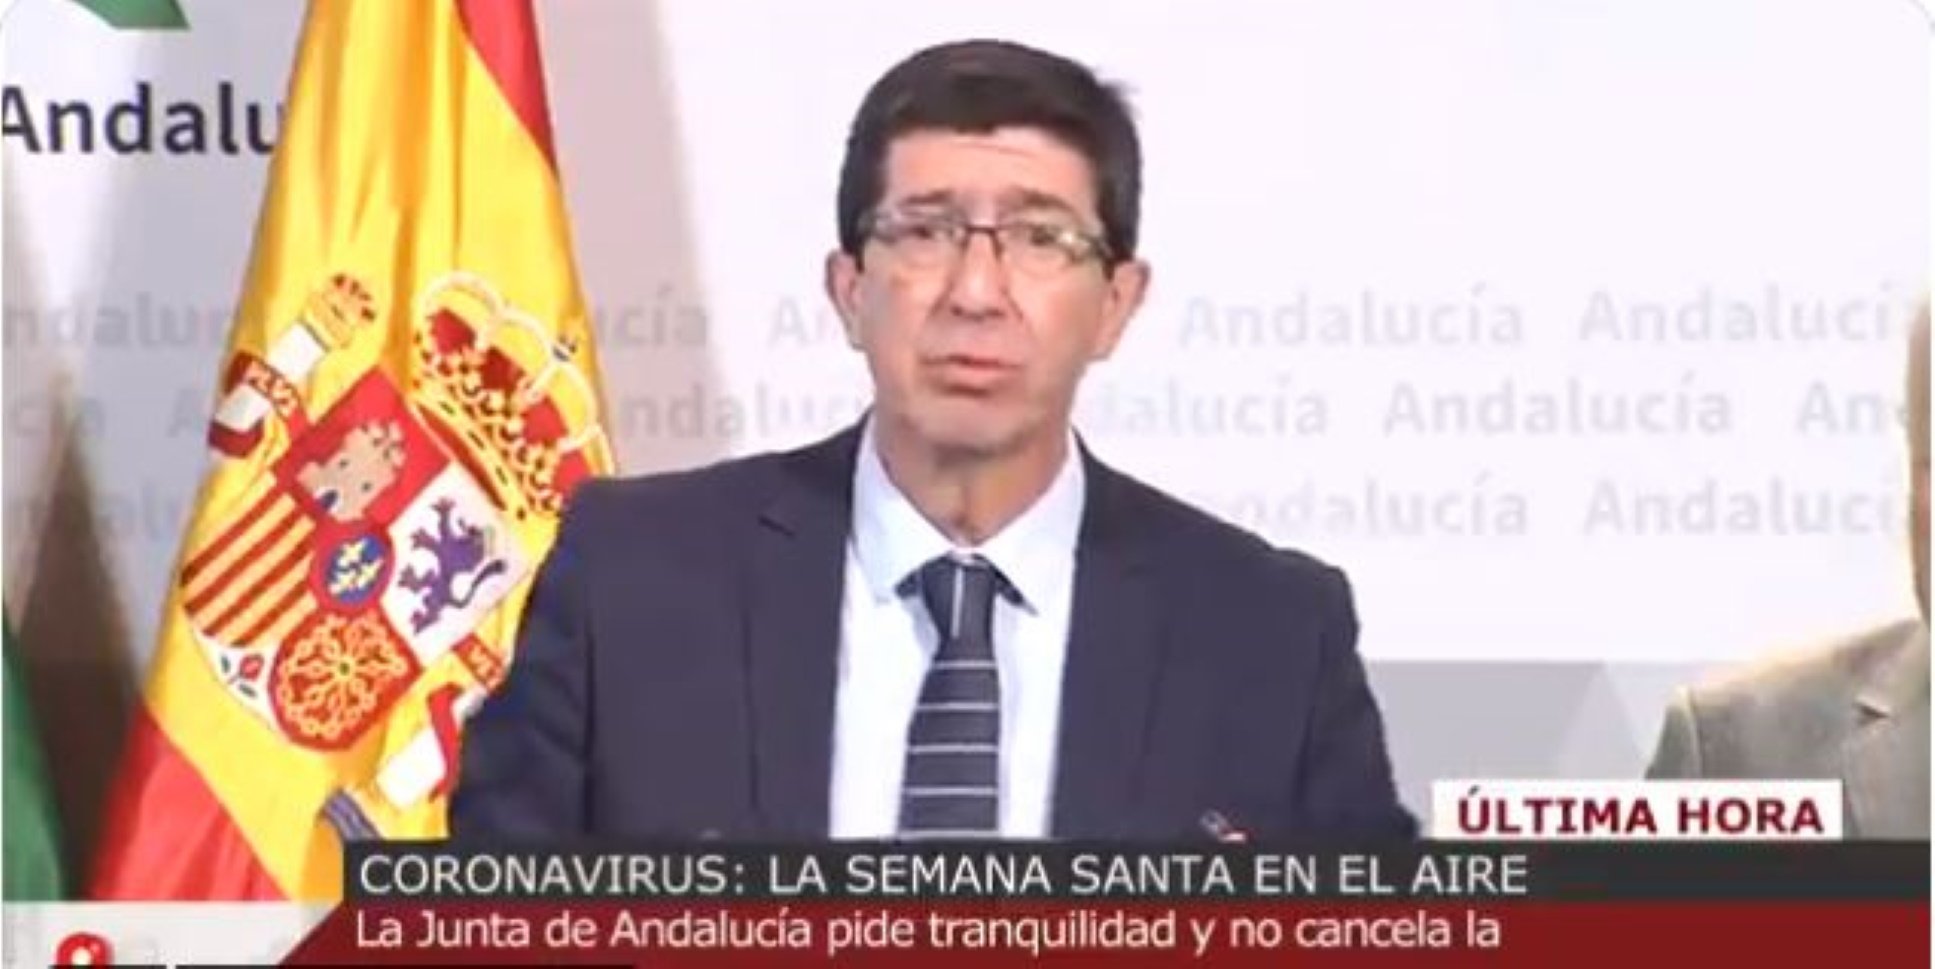 Vicepresidente andaluz: "La Setmana Santa no se suspenderá porque tiene fecha"